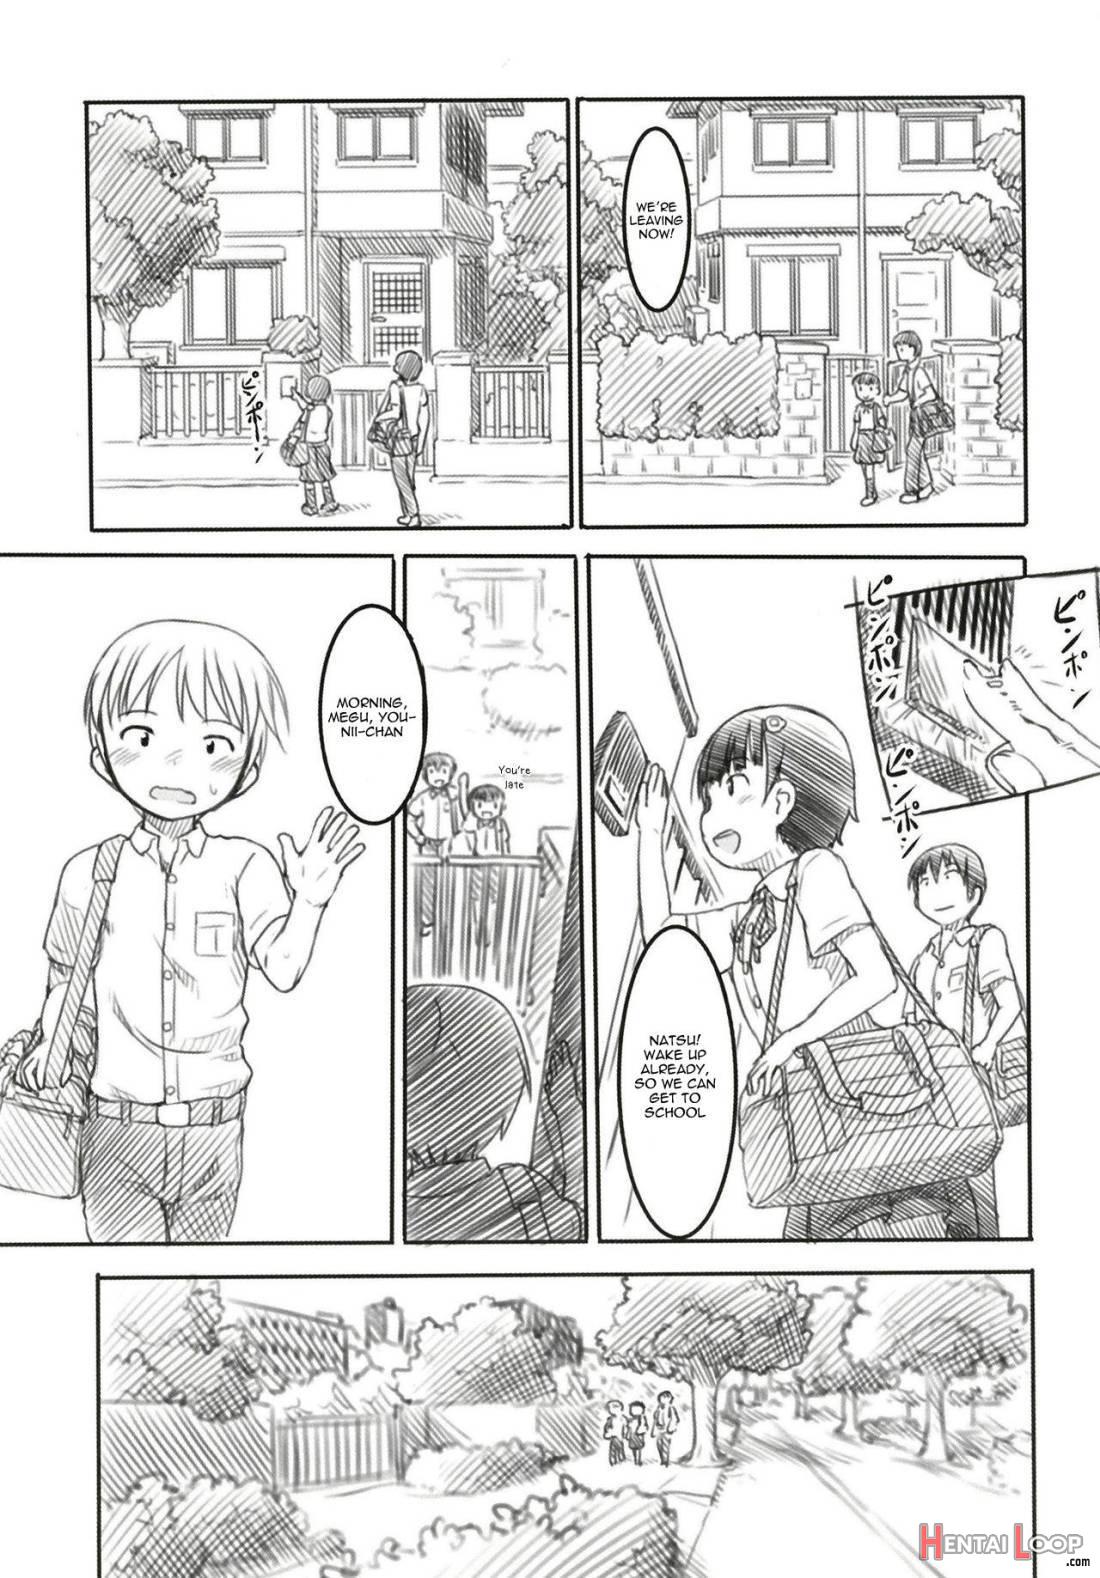 Shinyuu wa Imouto no Kareshi page 3